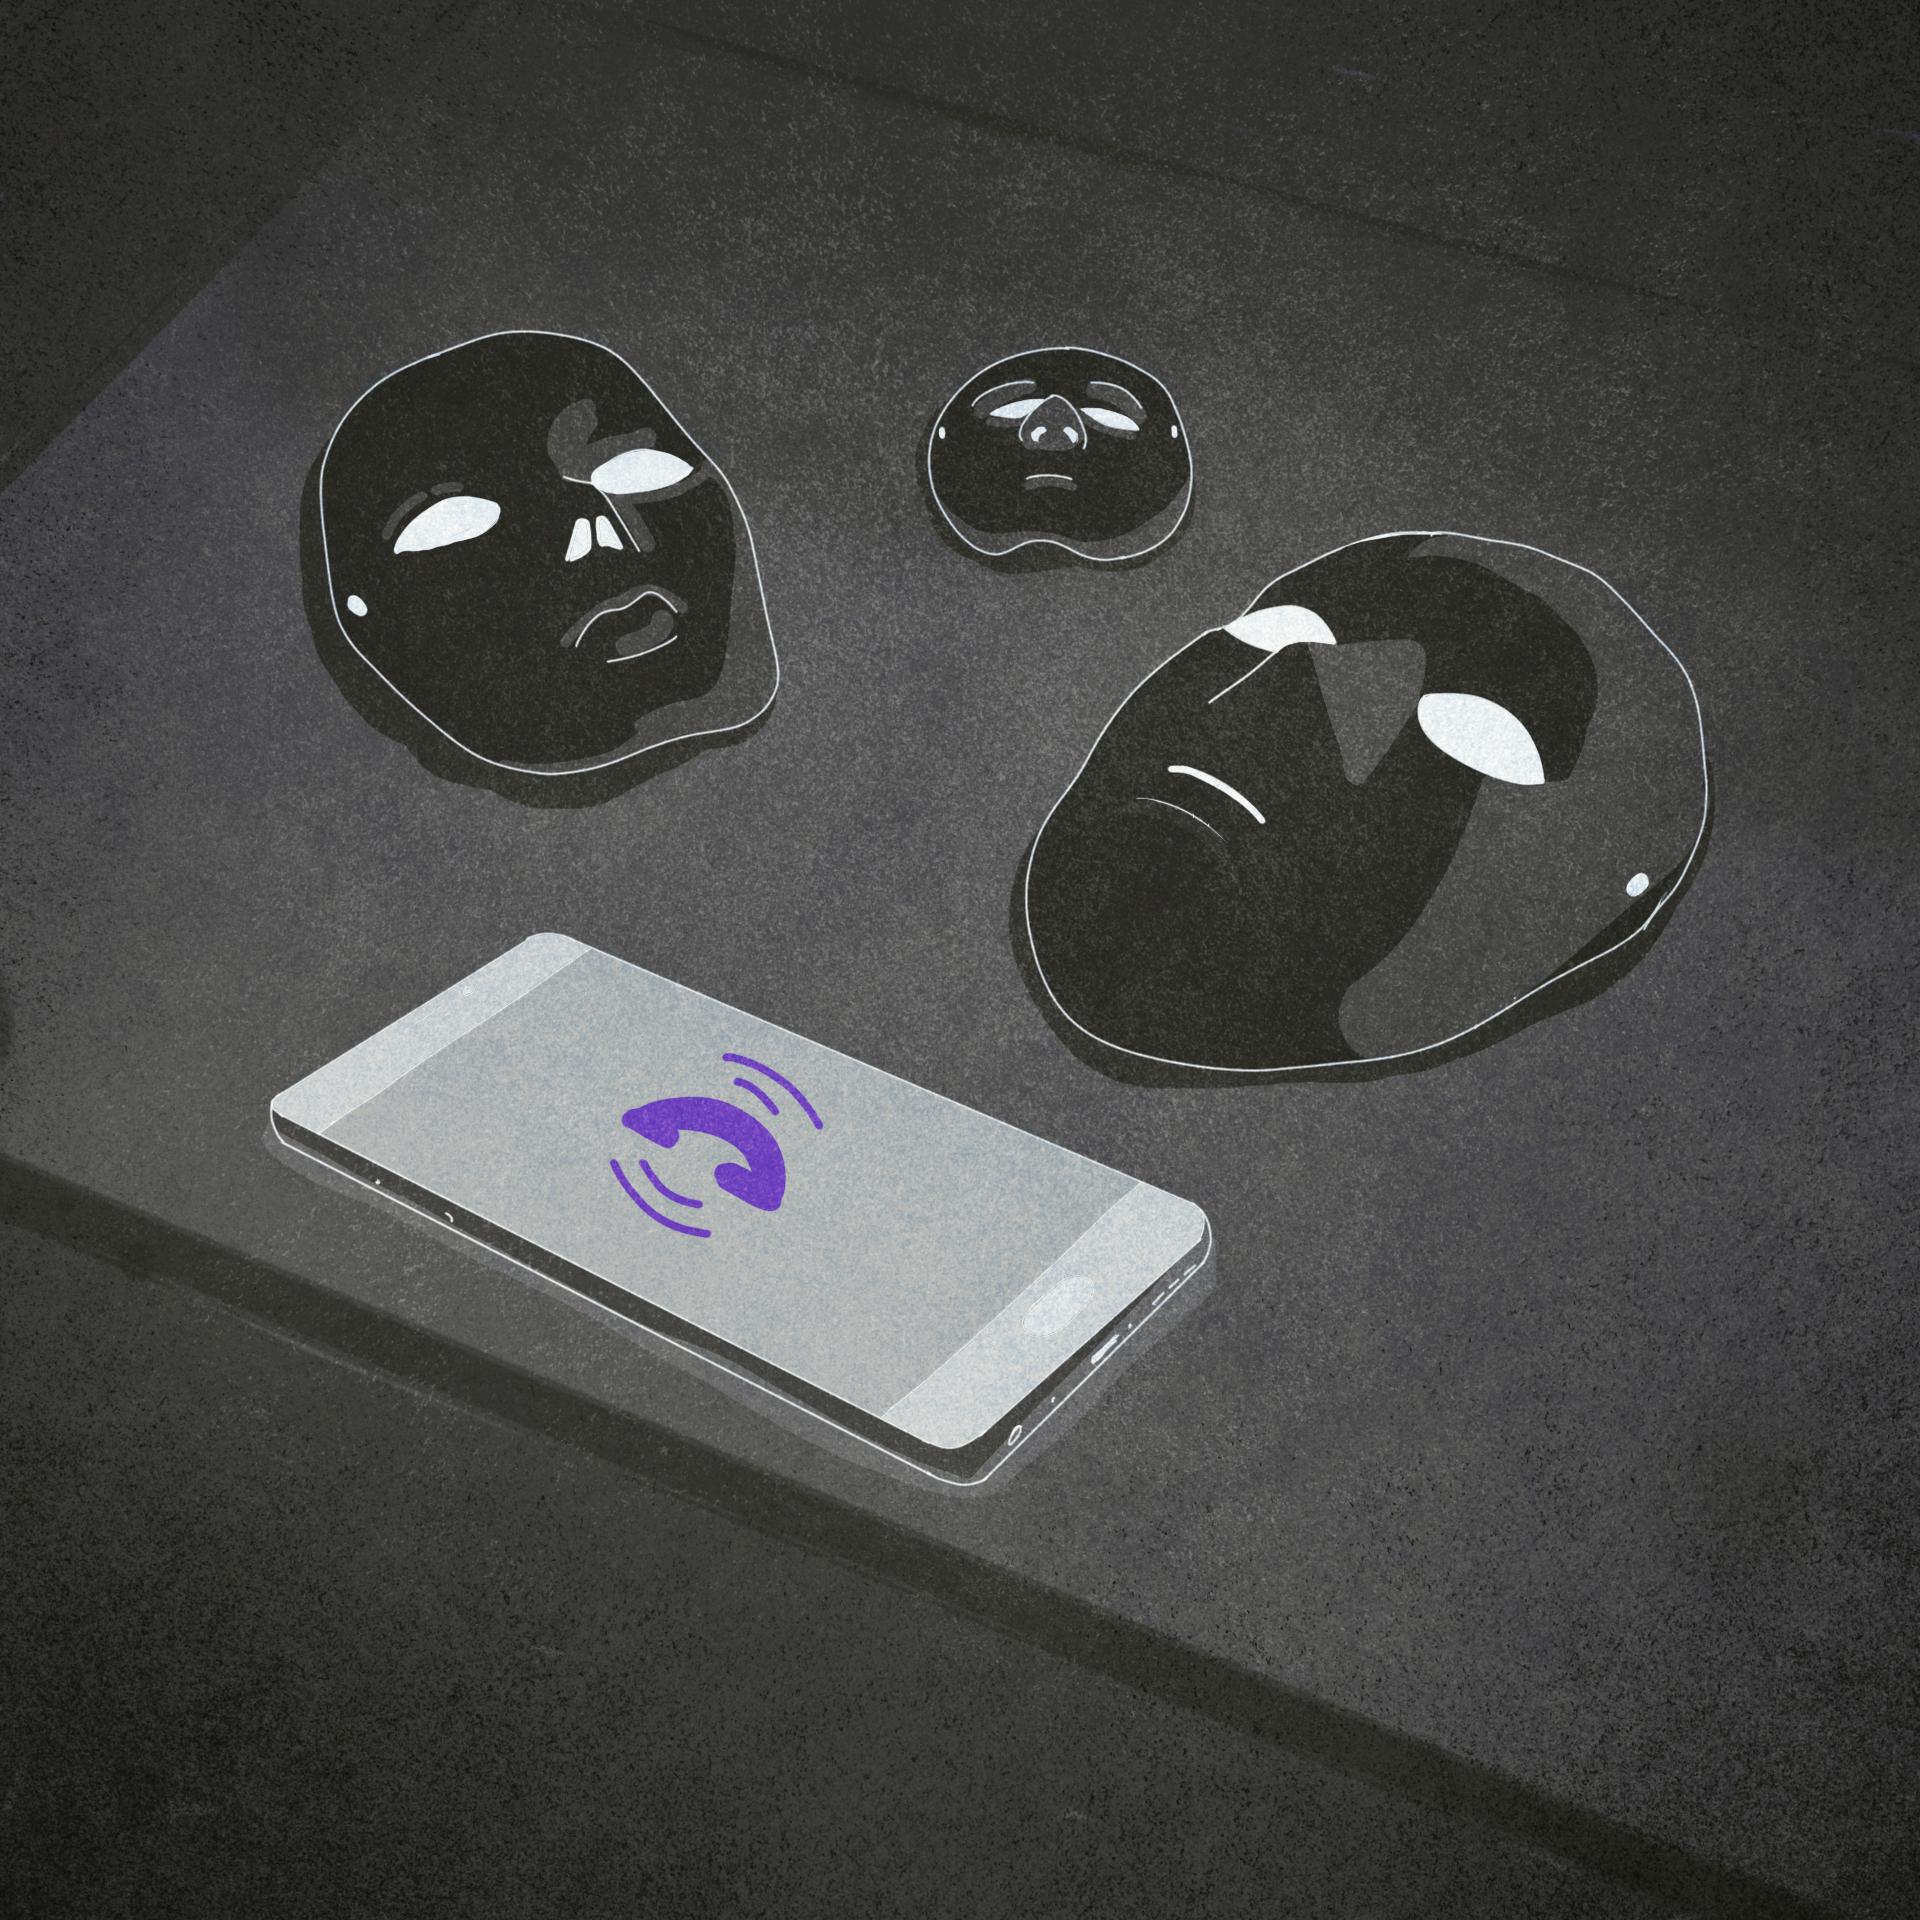 Ilustracja: Na stole leży smartfon i maski